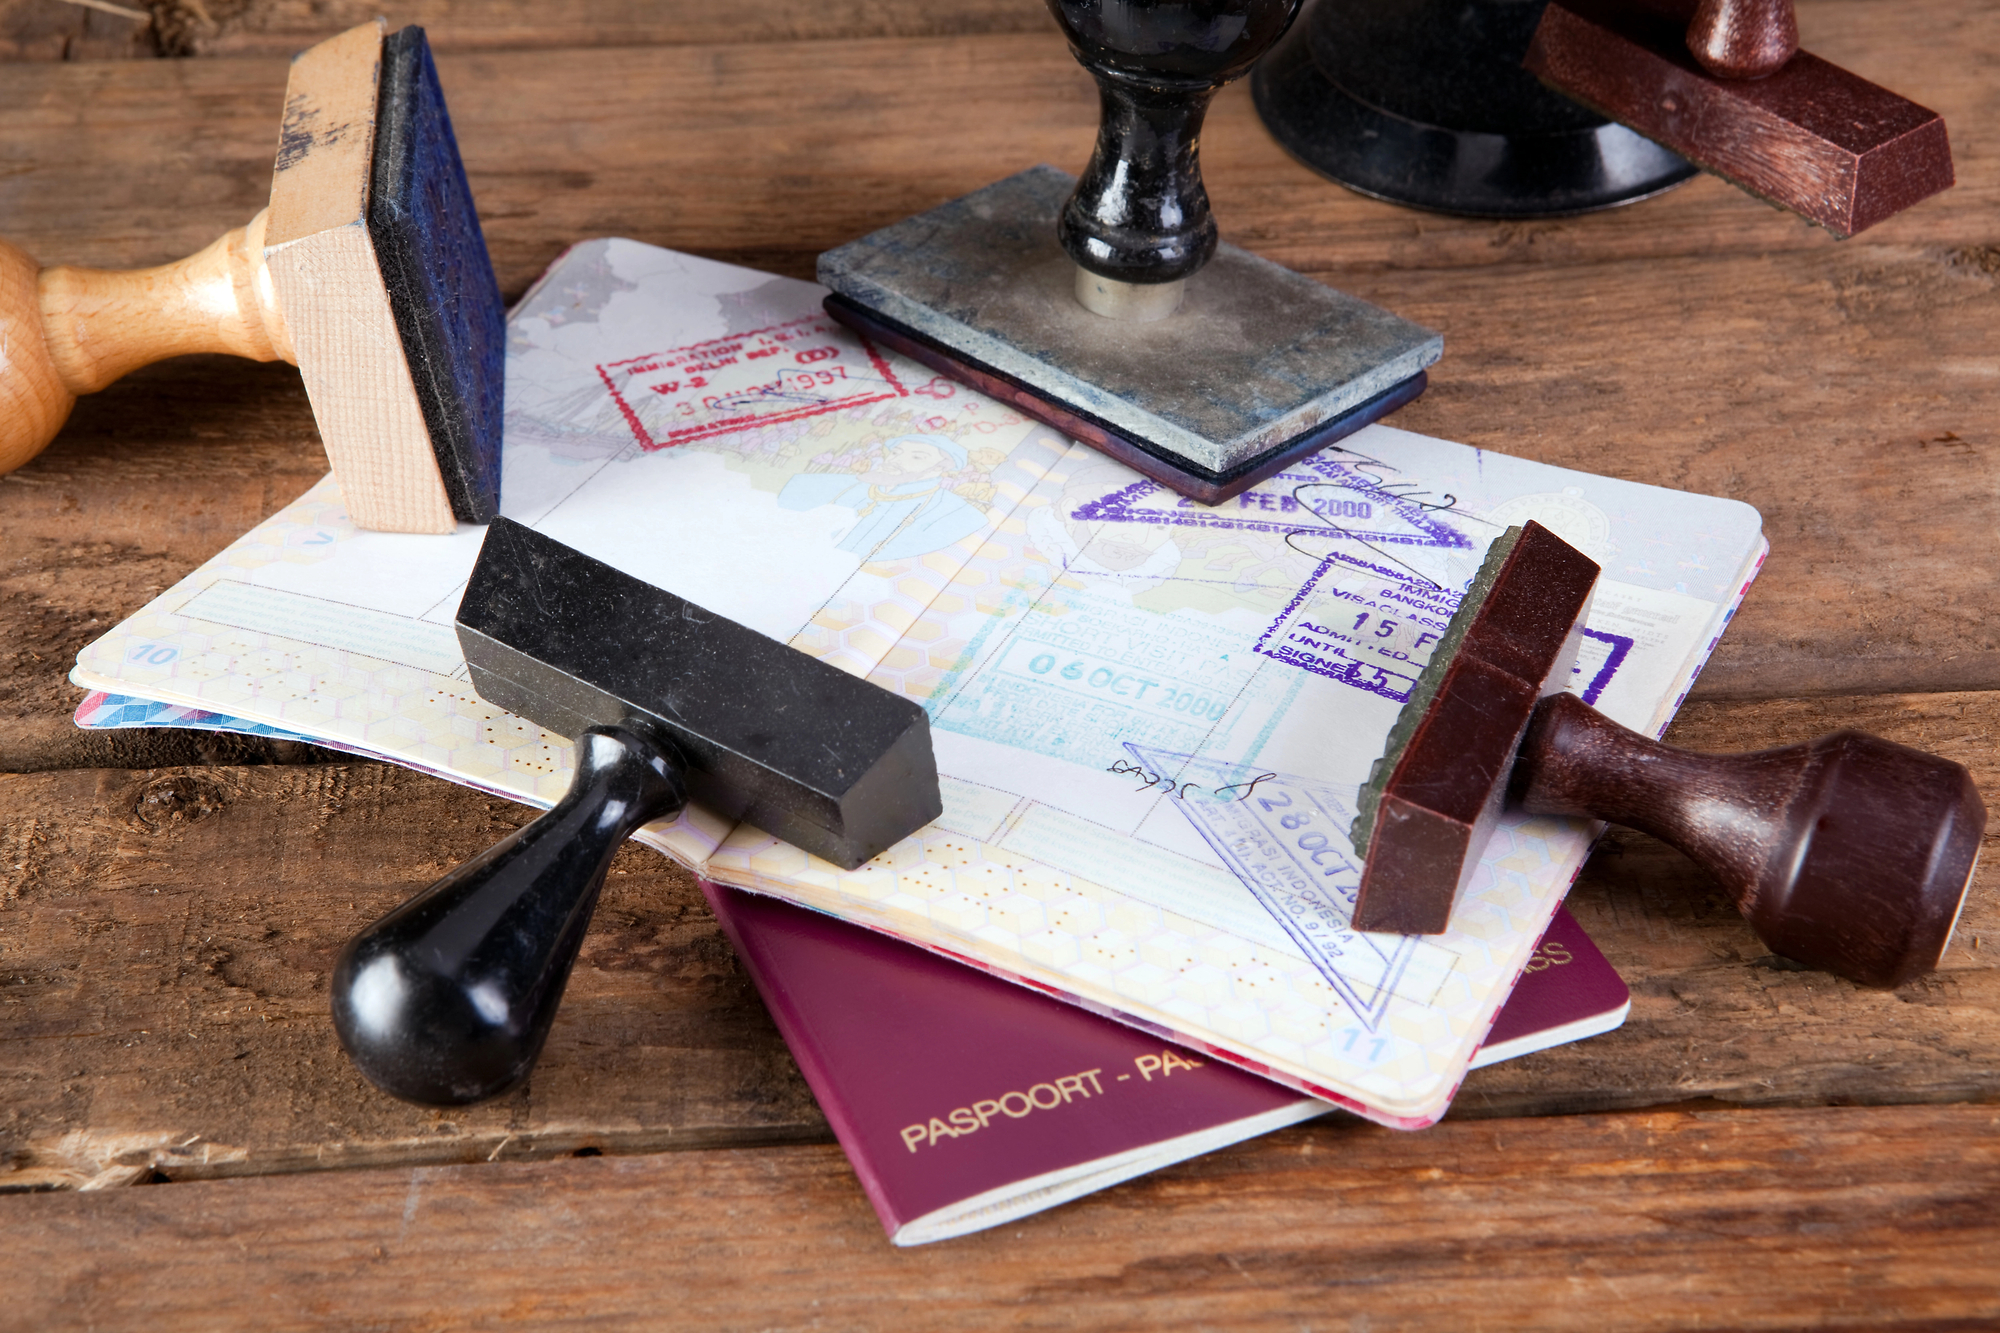 Da luglio sarà possibile richiedere il passaporto negli uffici postali